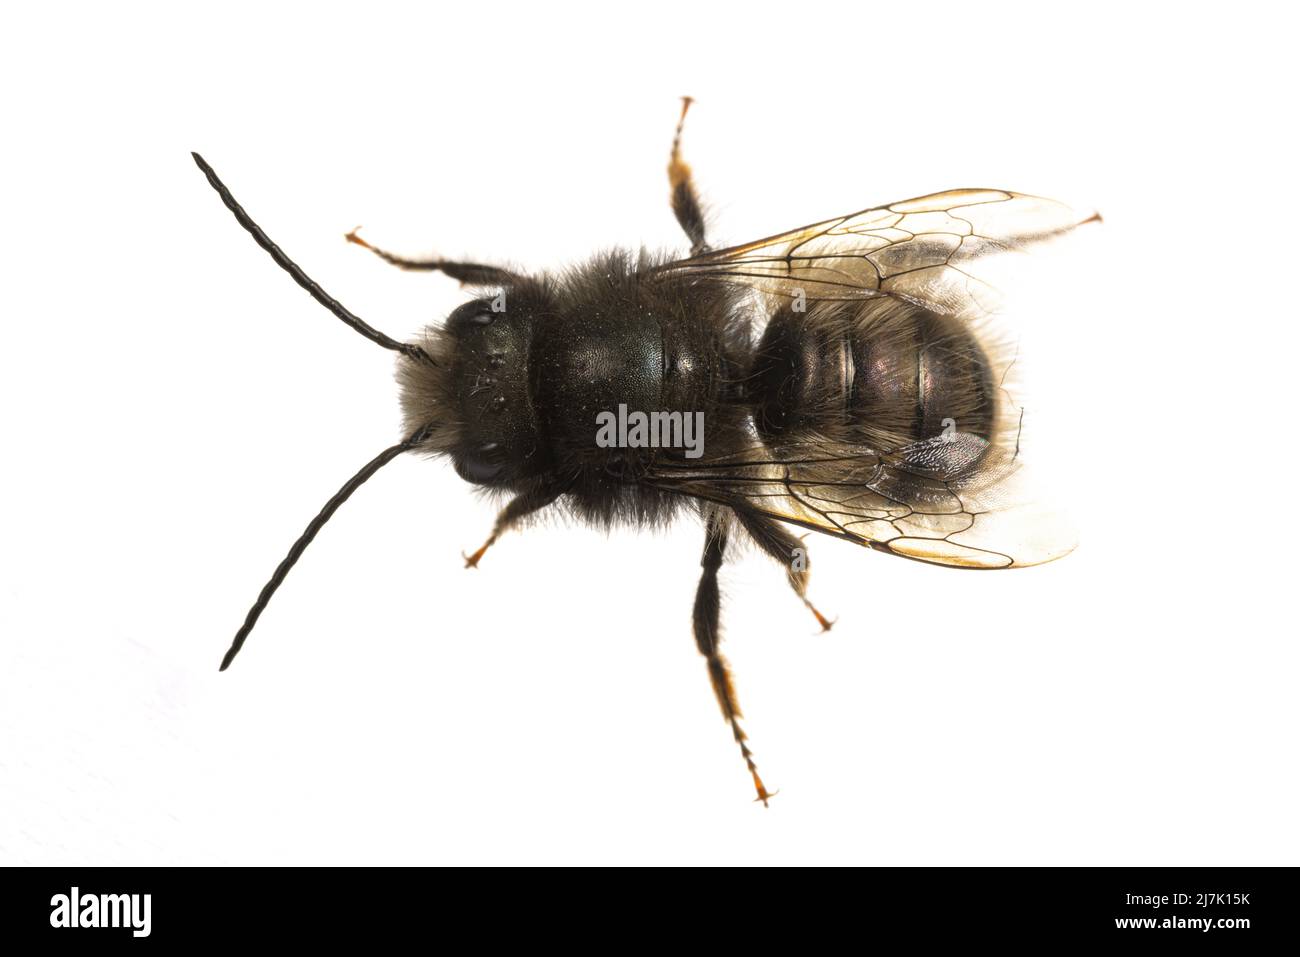 Insects of europe - Bienen: Draufsicht auf männliche Osmia cornuta Europäische Obstbiene (deutsche Gehoerte Mauerbiene) isoliert auf weißem Hintergrund Stockfoto